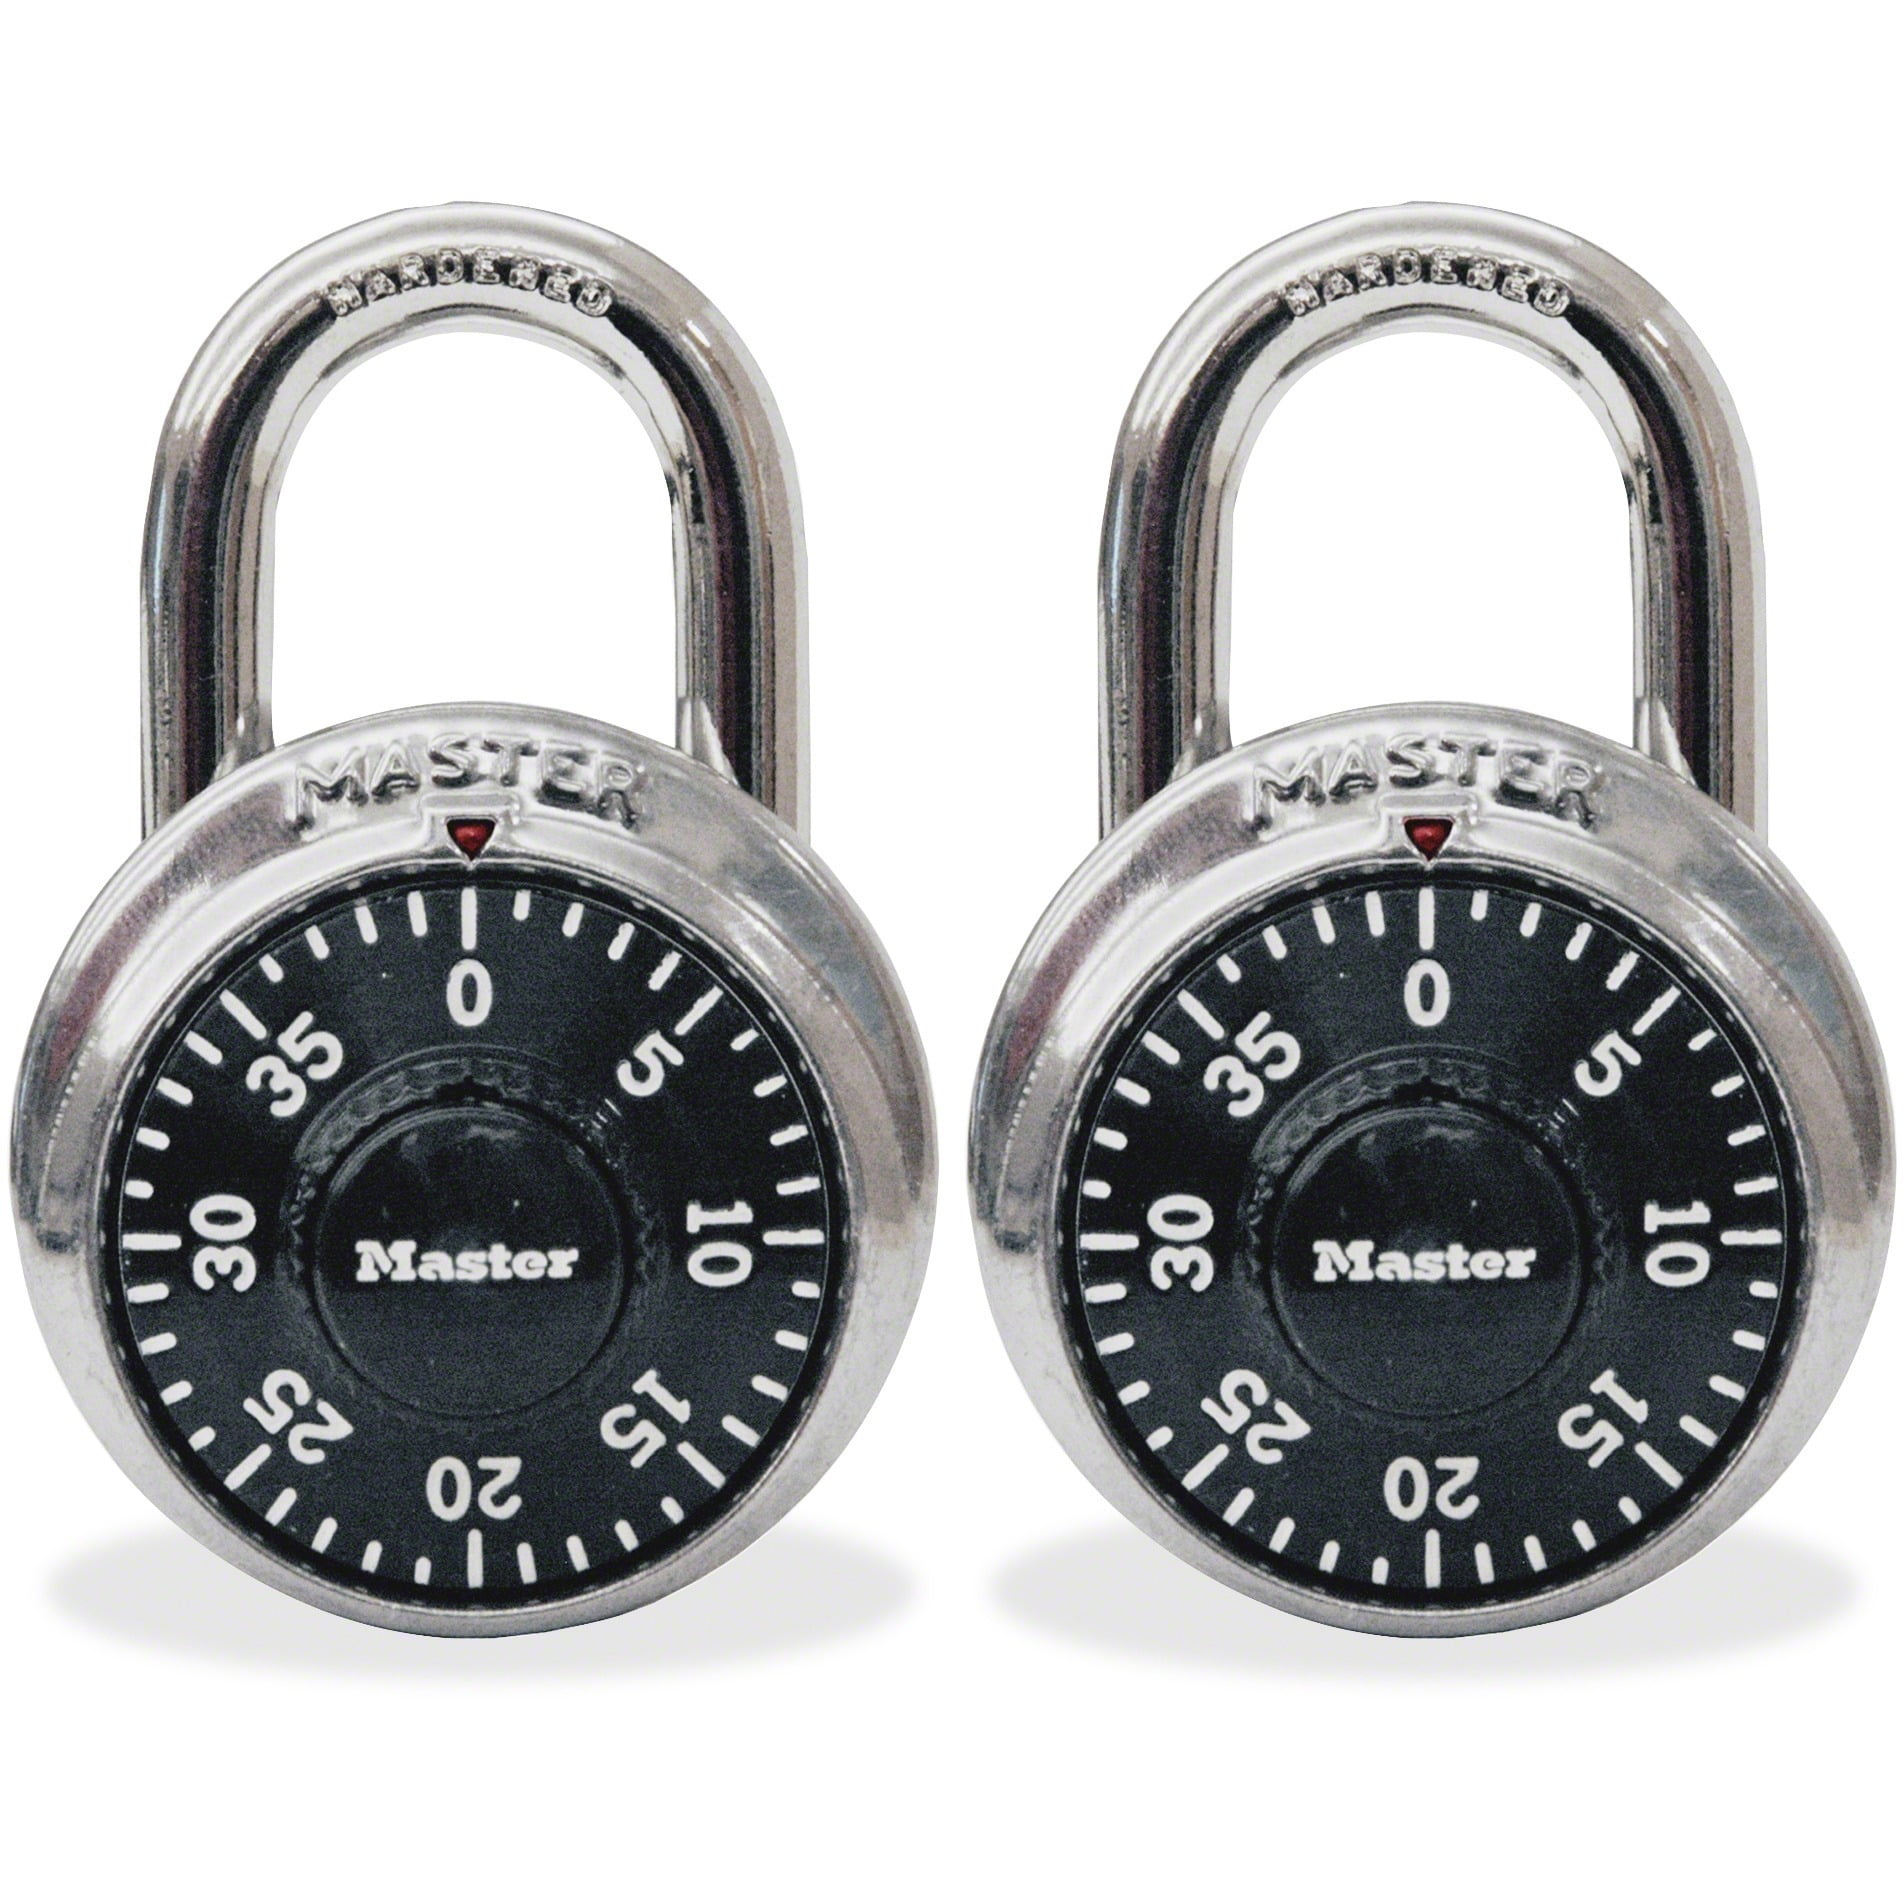 Master Lock Combination Lock, Set Your Own Combination Lock, Indoor and  Outdoor Padlock, Weatherproof Code Lock,Black